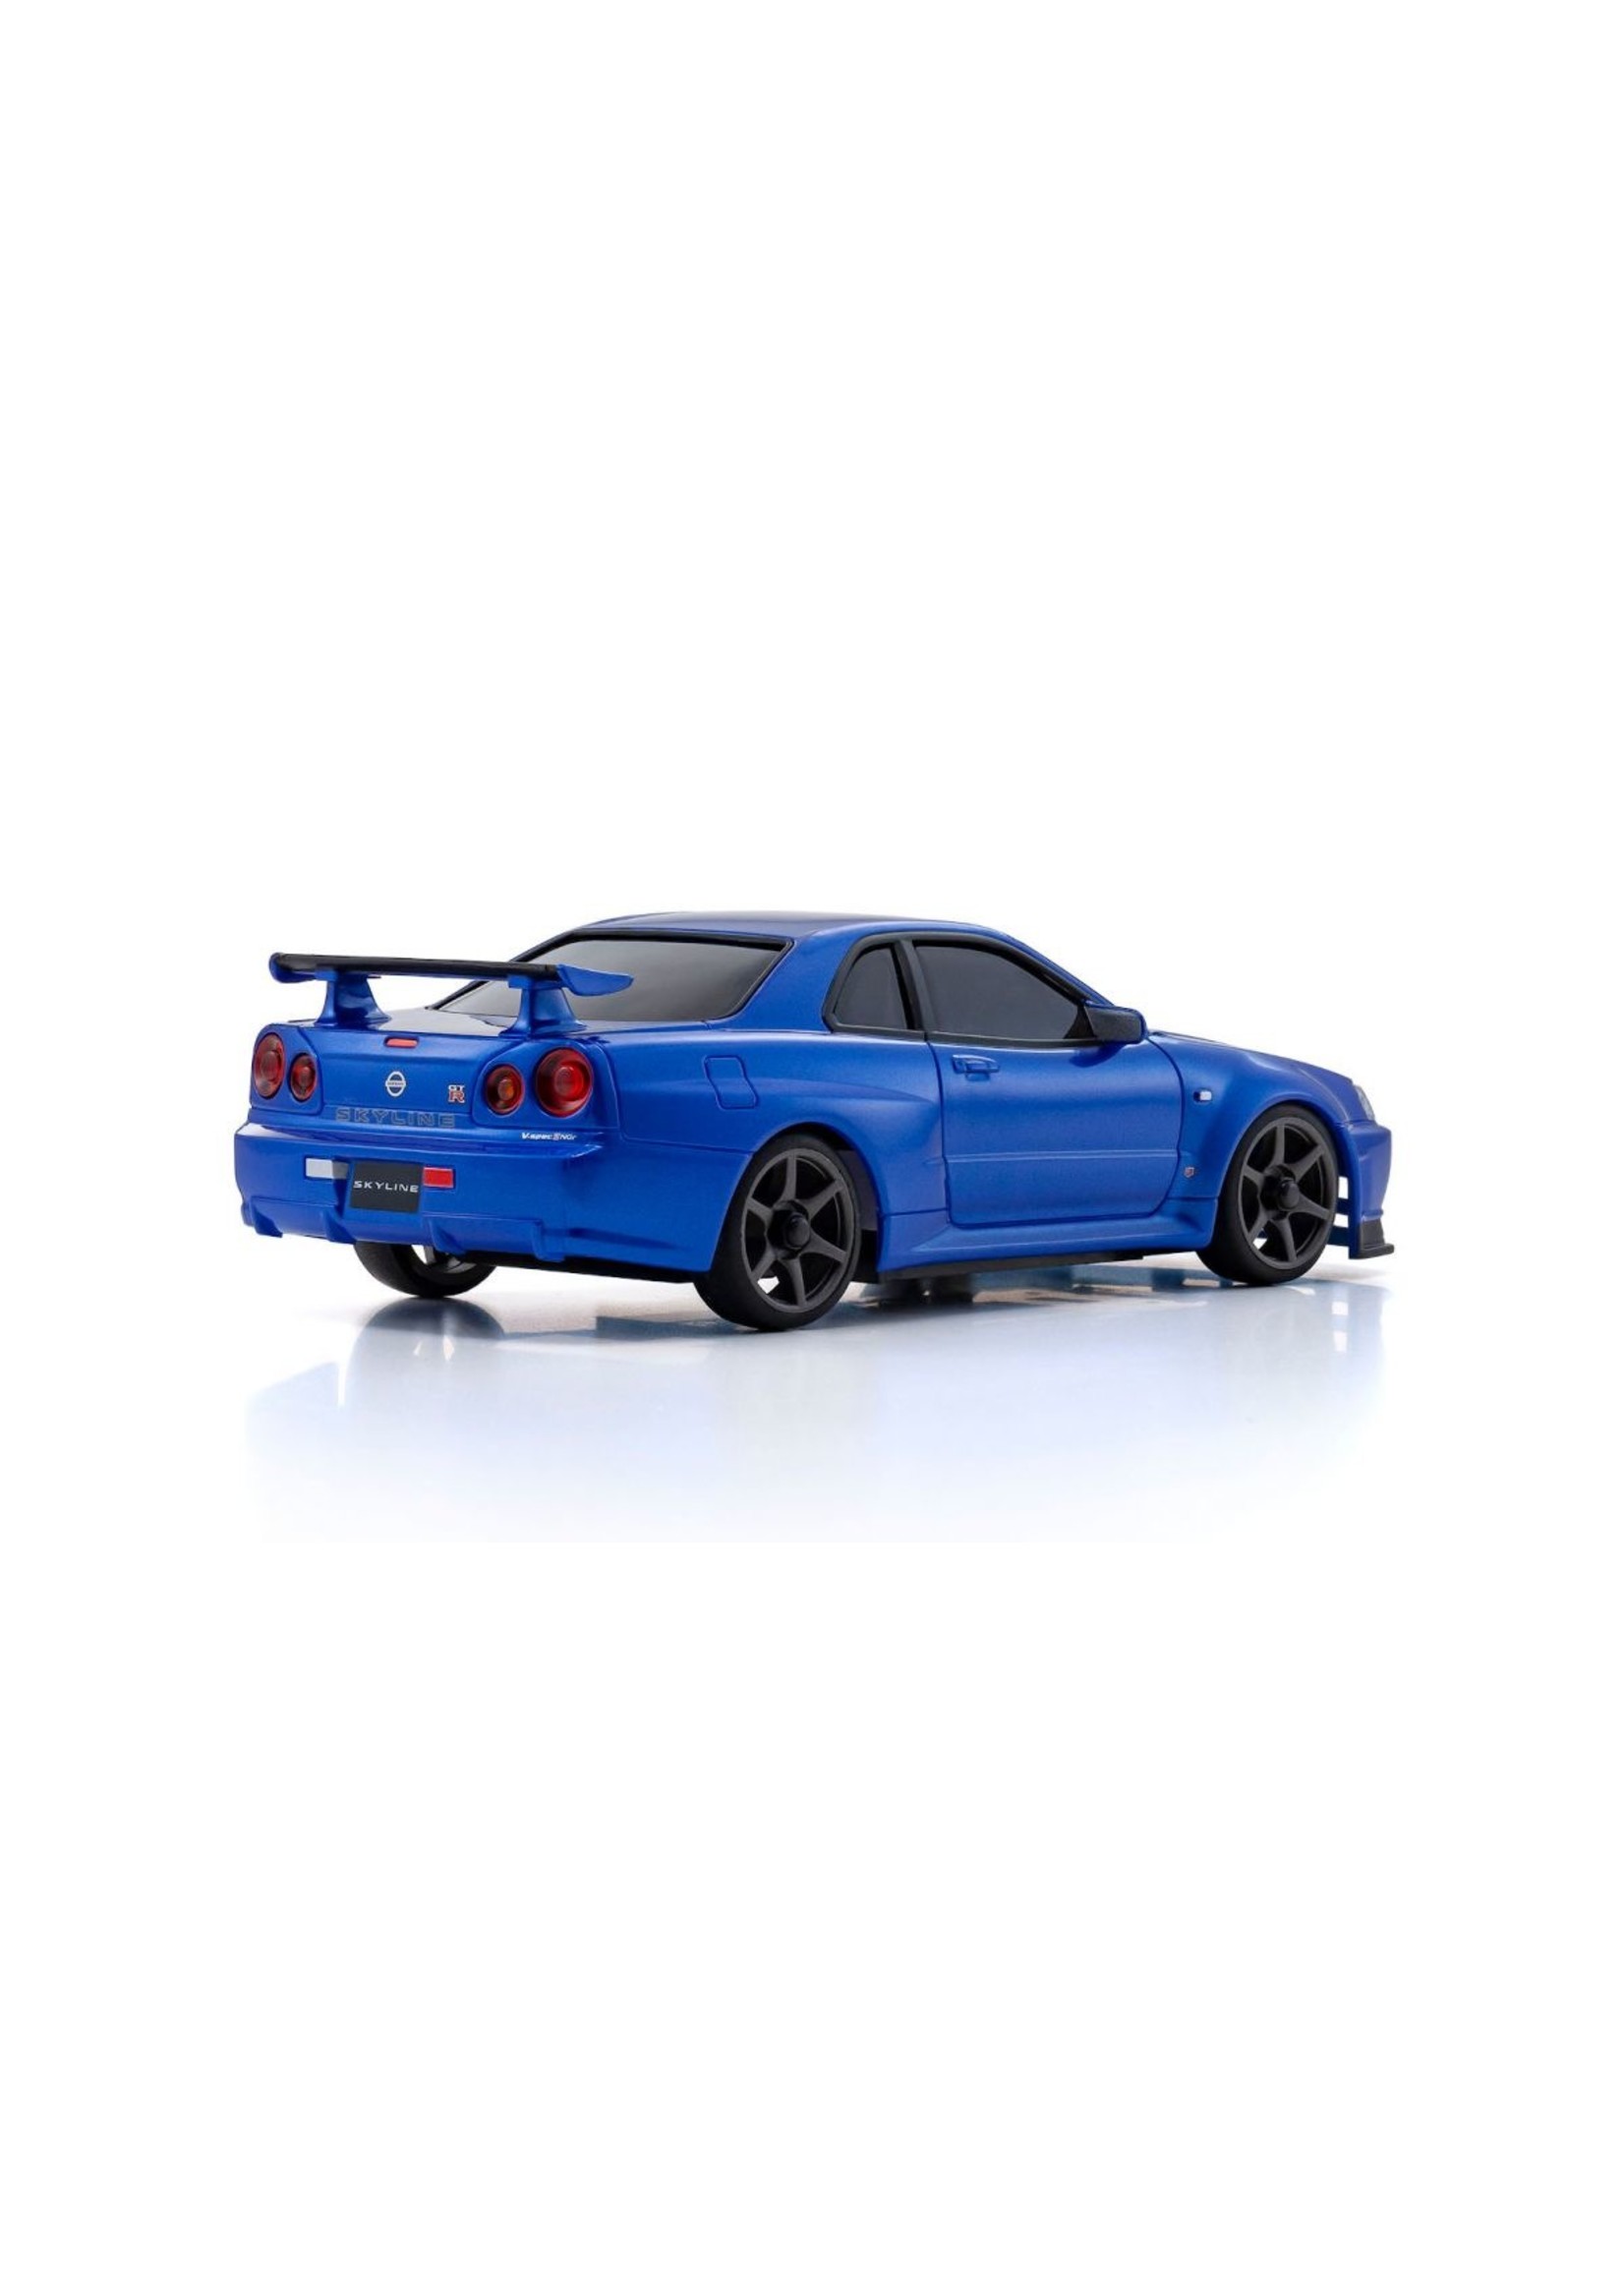 Kyosho MINI-Z AWD Skyline GT-R V.spec II Nur (R34), Metallic Blue - Readyset